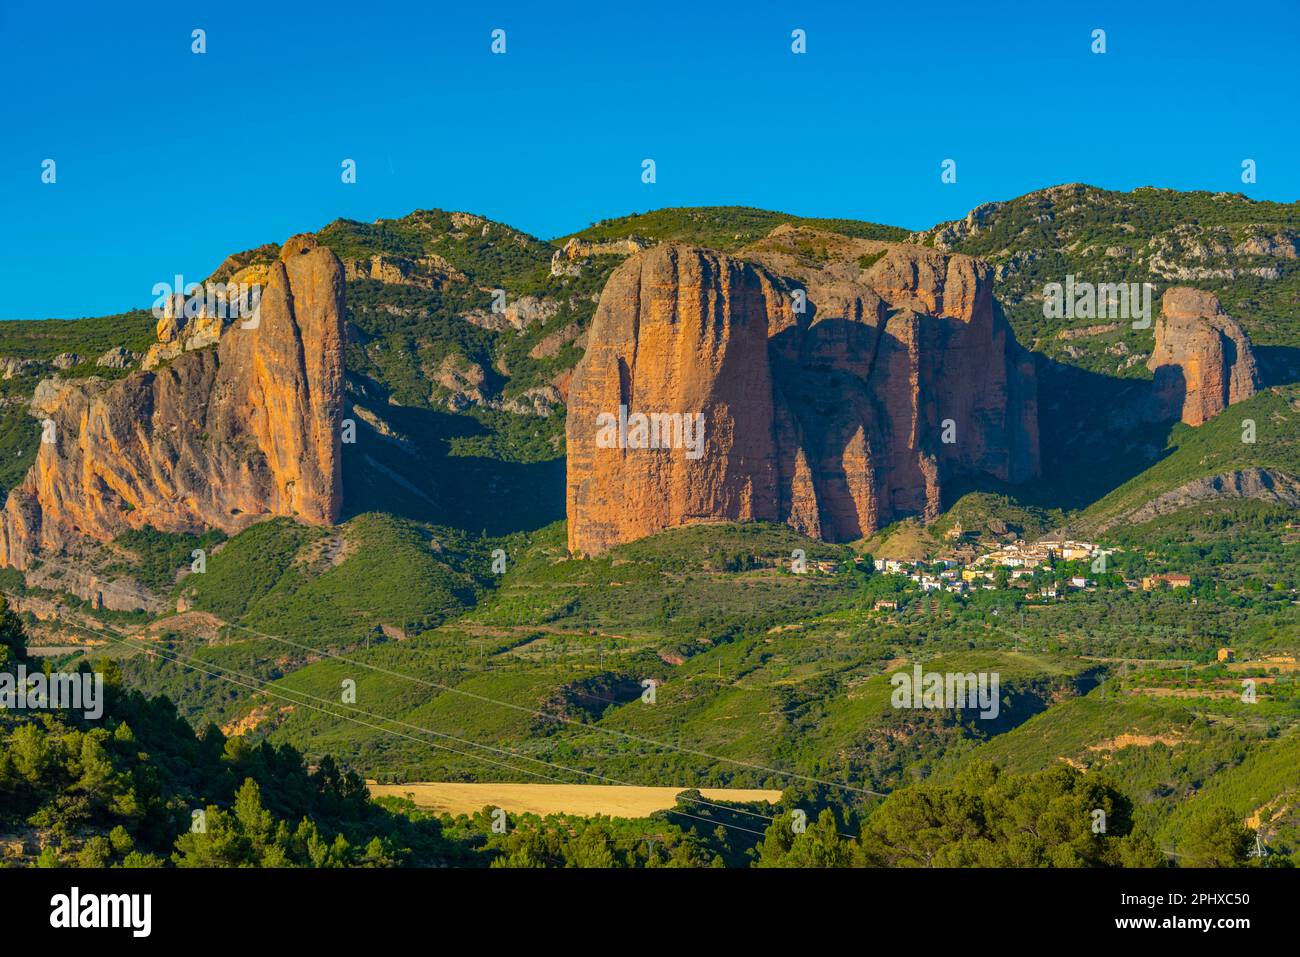 mallos de riglos cliffs in Spain. Stock Photo